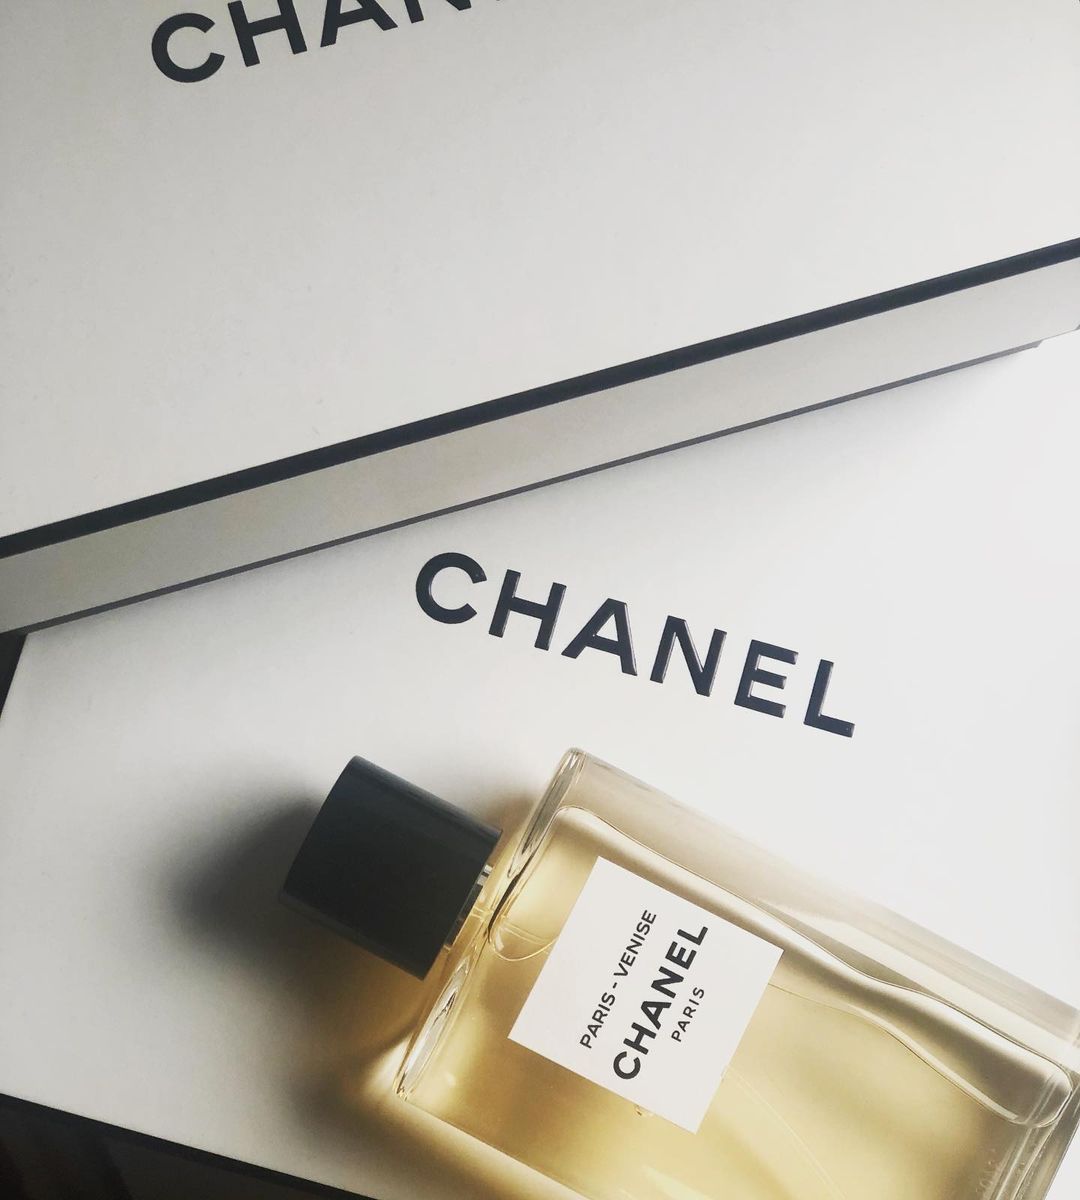 Chia sẻ với hơn 67 về chanel paris perfume  cdgdbentreeduvn